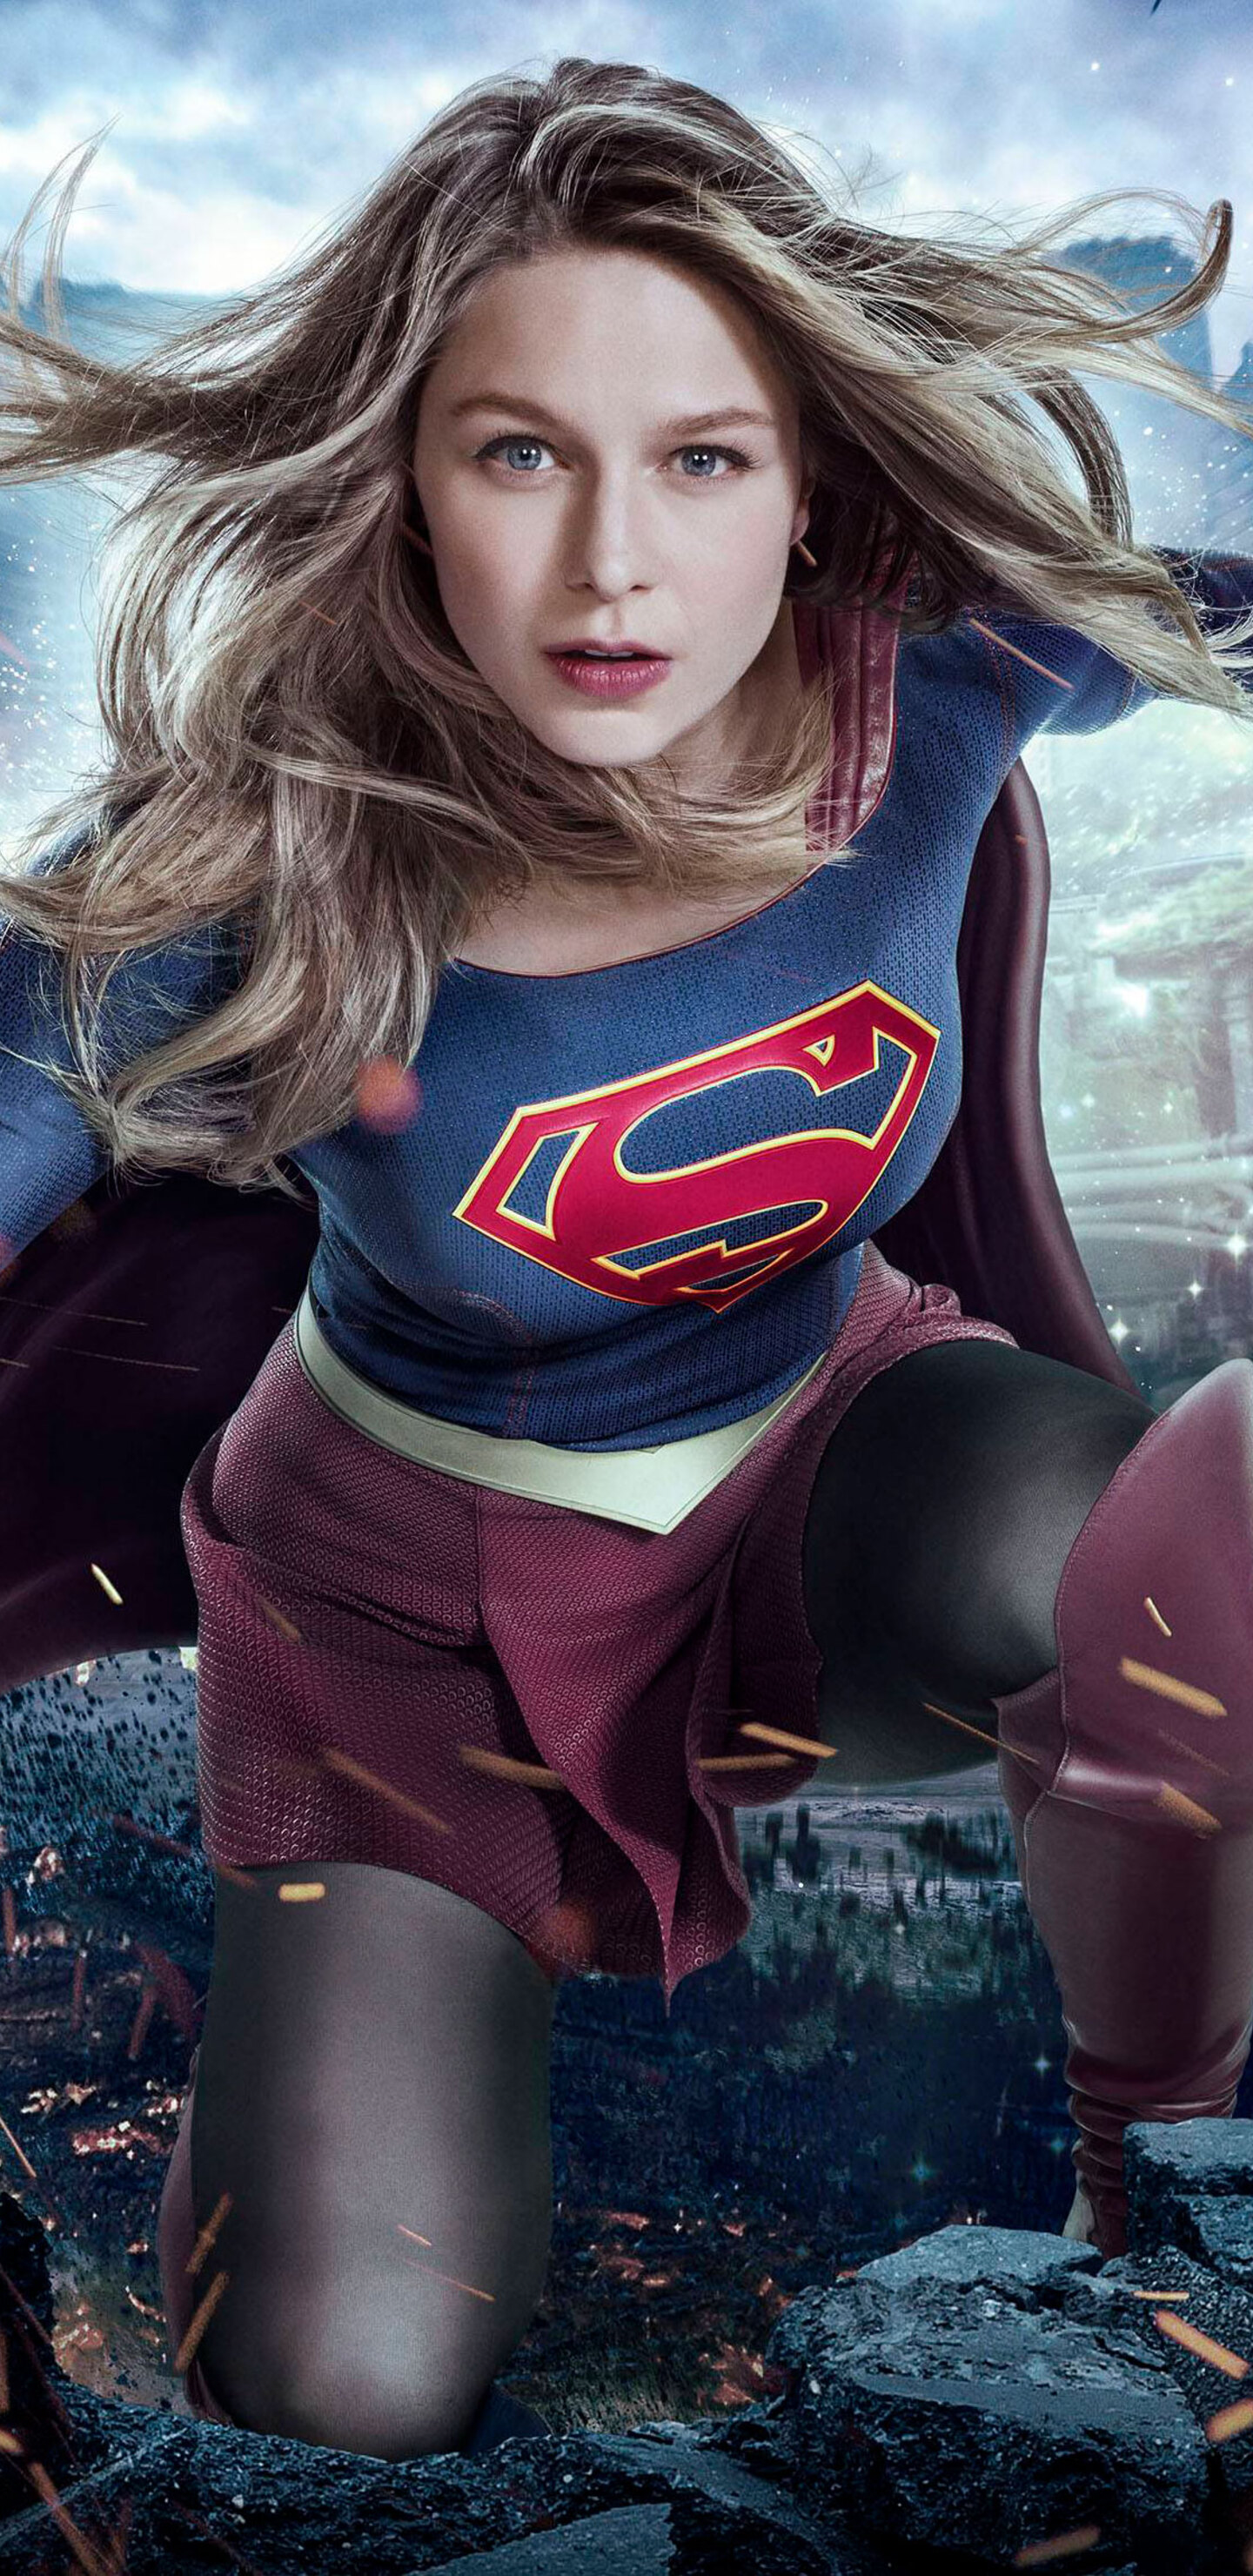 Supergirl Melissa Benoist Season 3 2017 Wallpapers